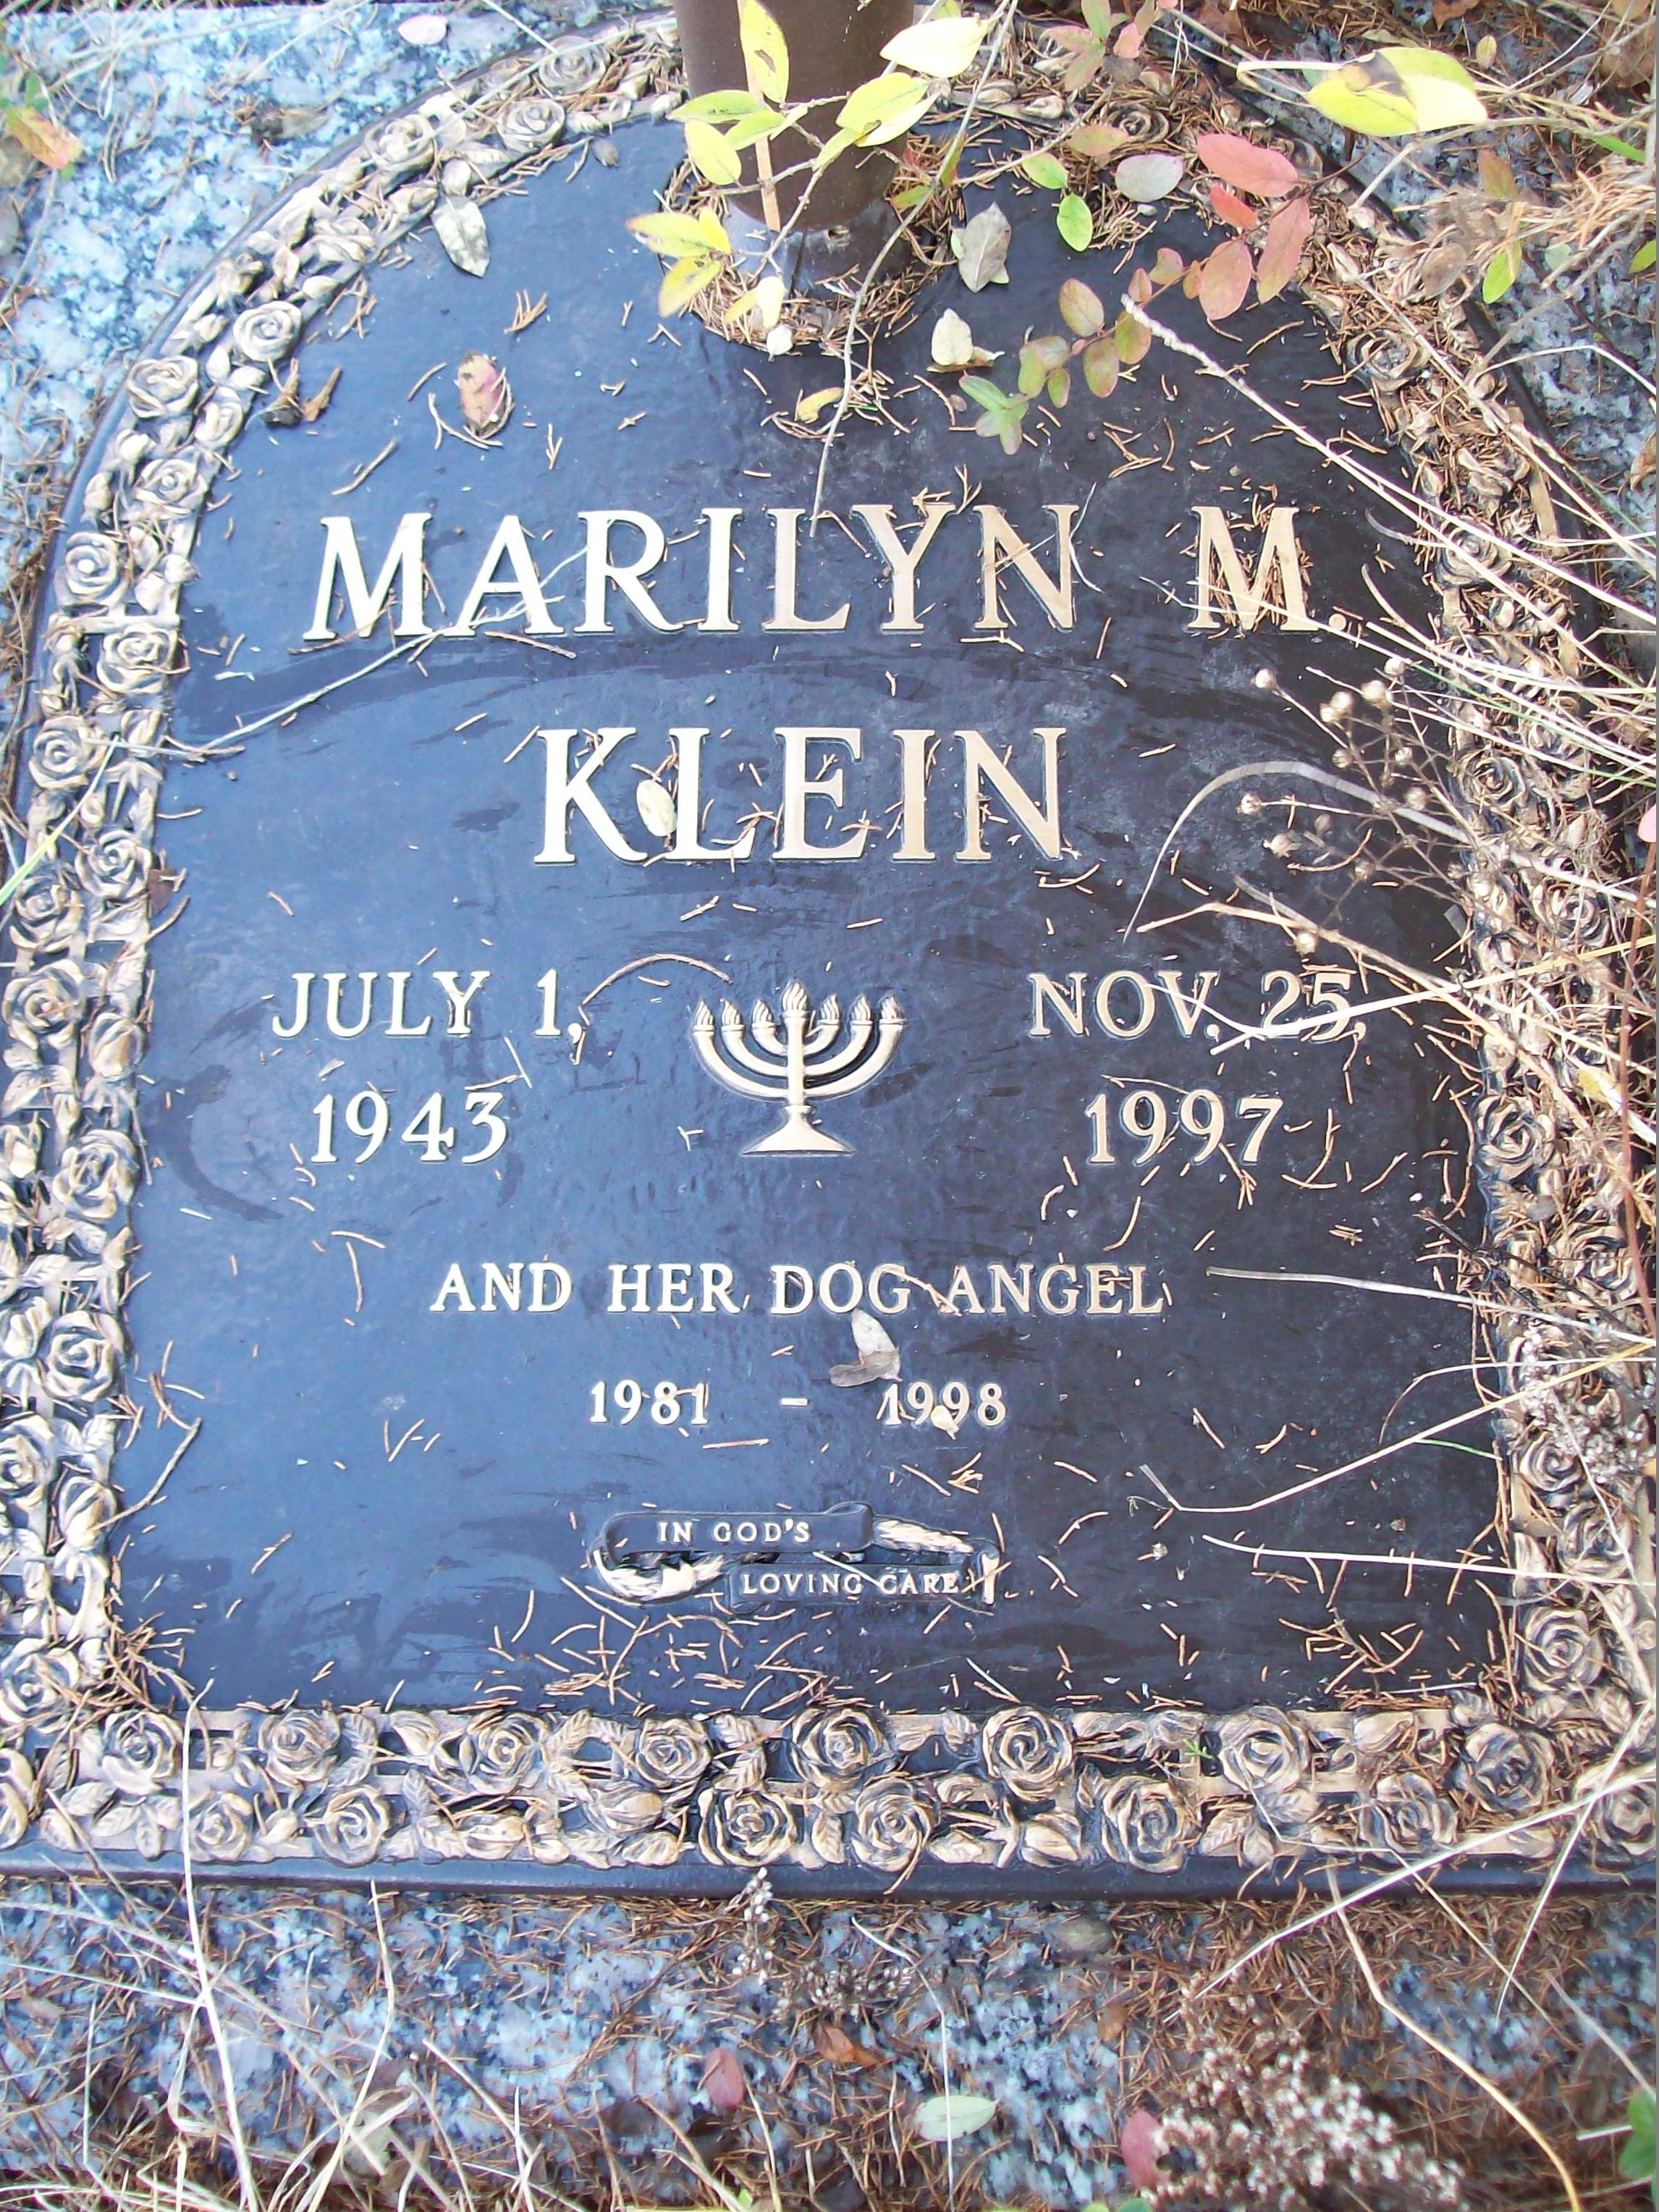 Marilyn M Klein gravesite